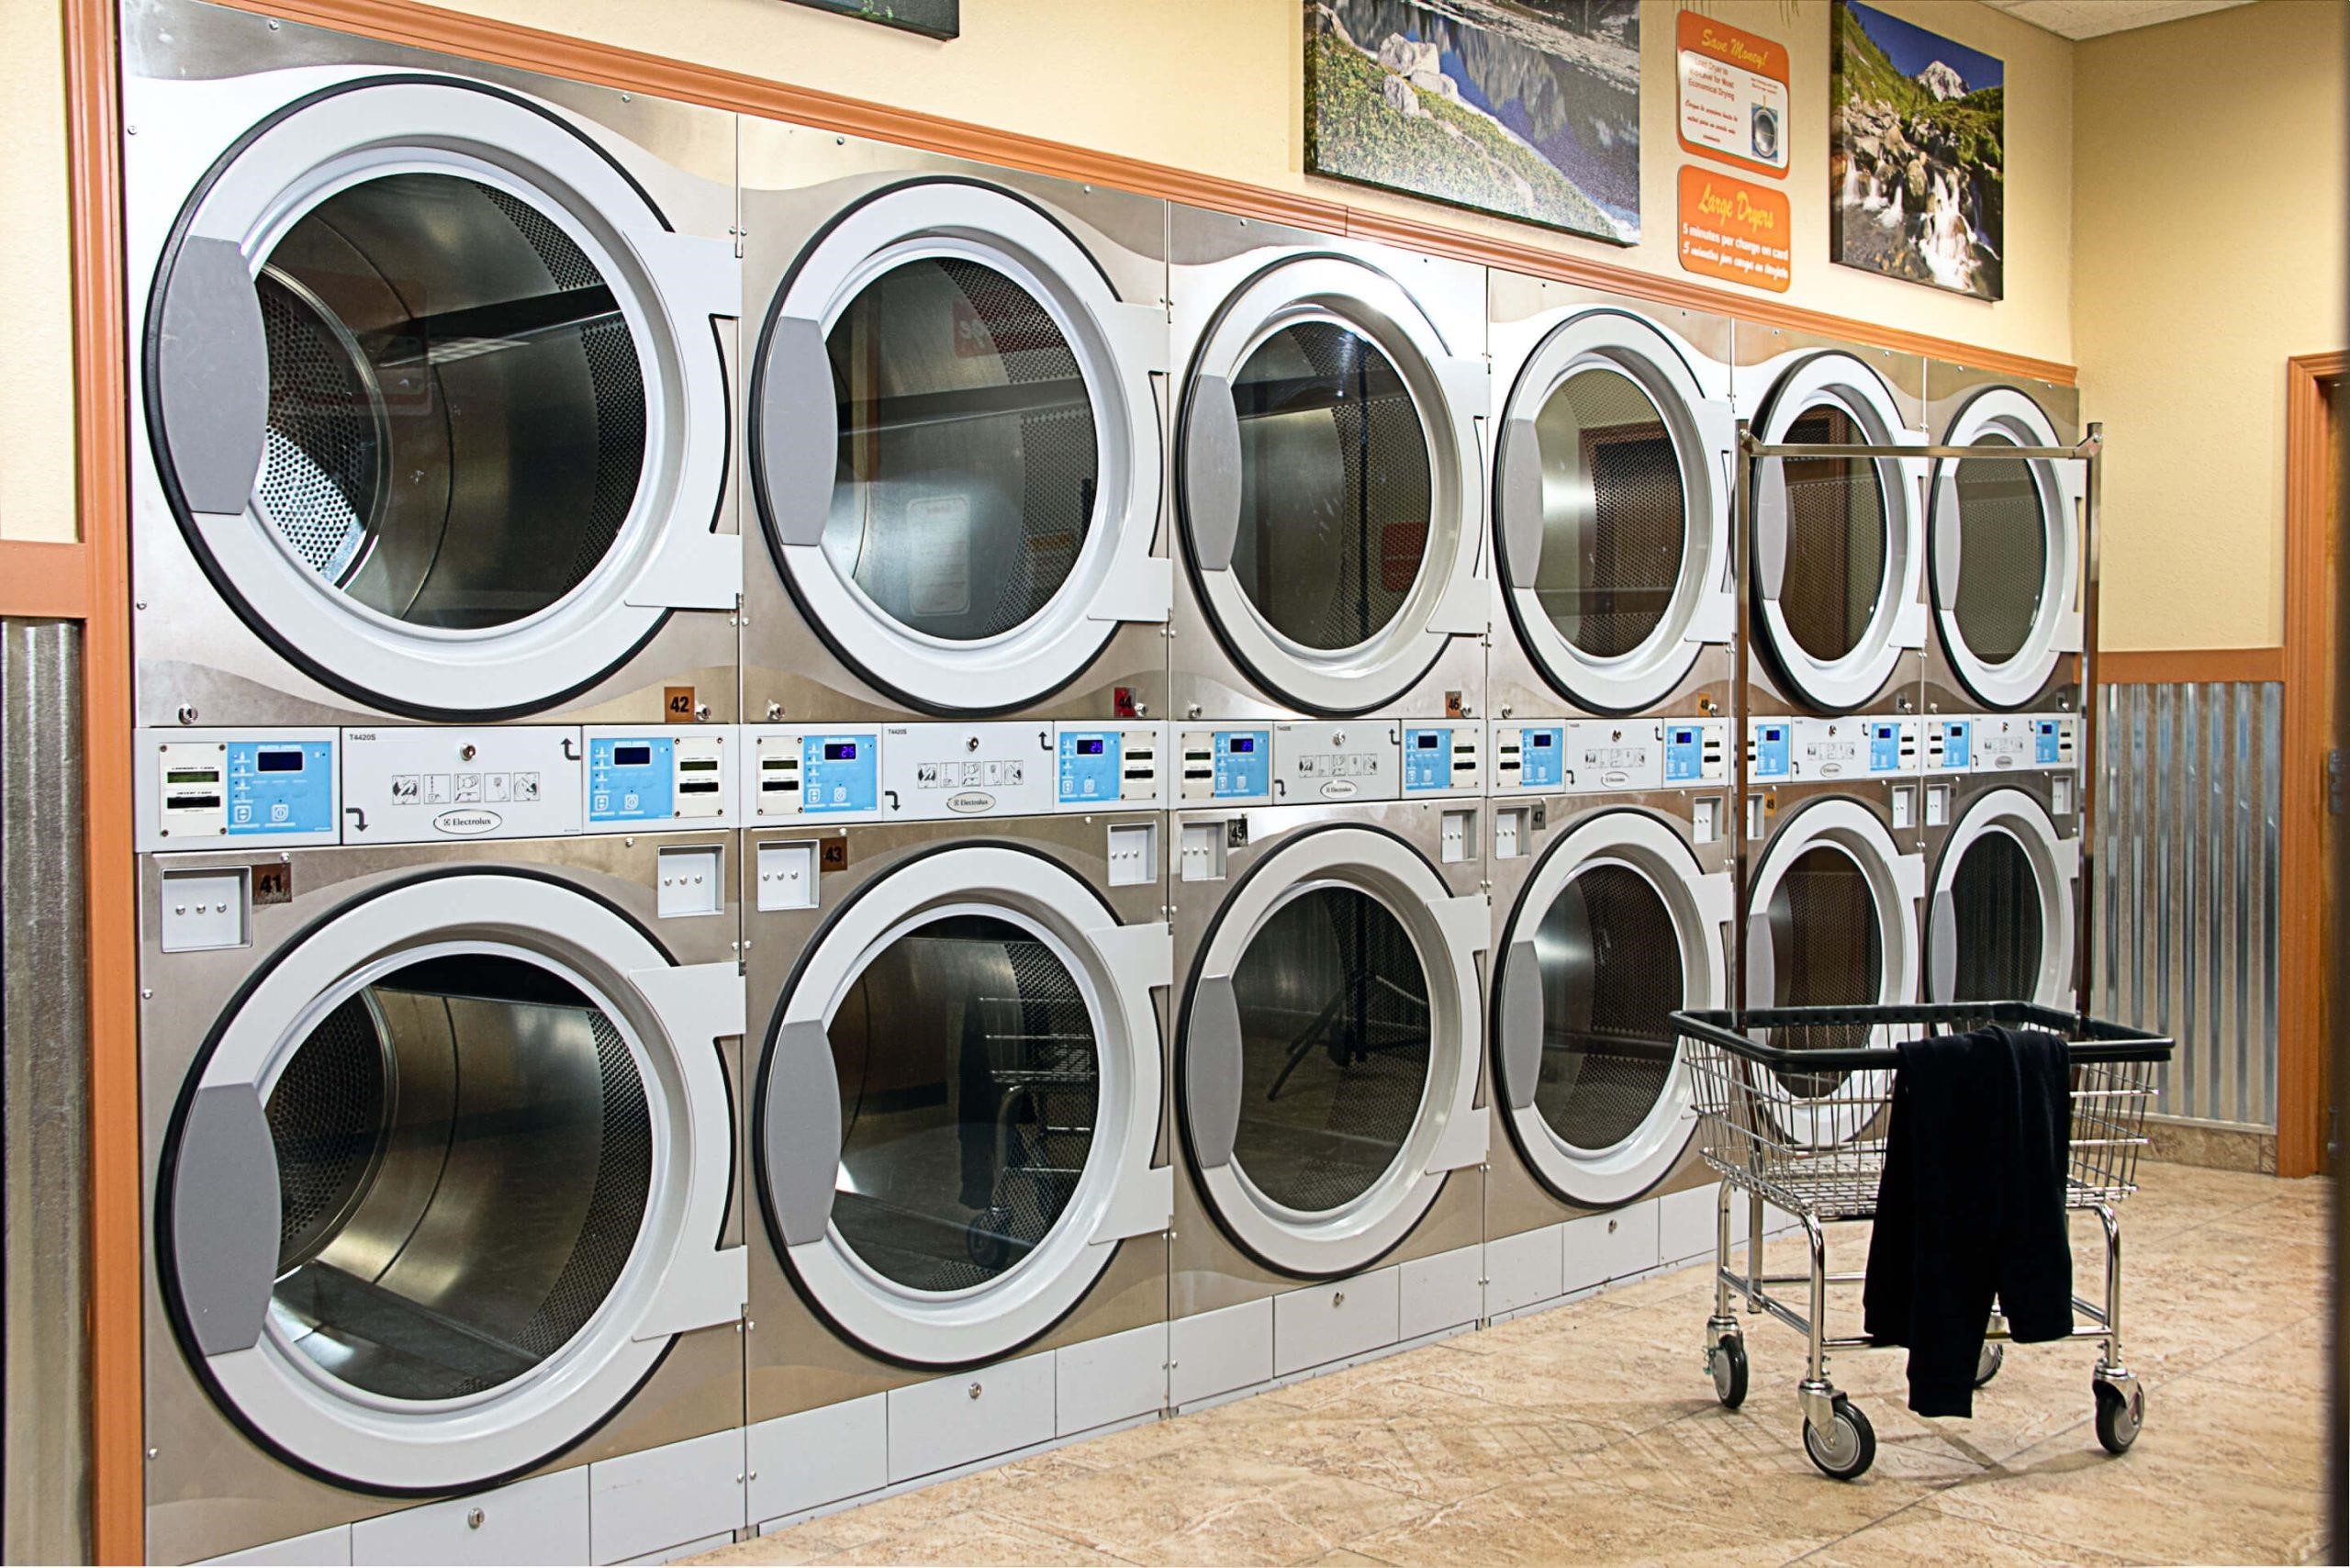 Kinh nghiệm mở tiệm giặt ủi: Chọn máy giặt phù hợp và quản lý hiệu quả